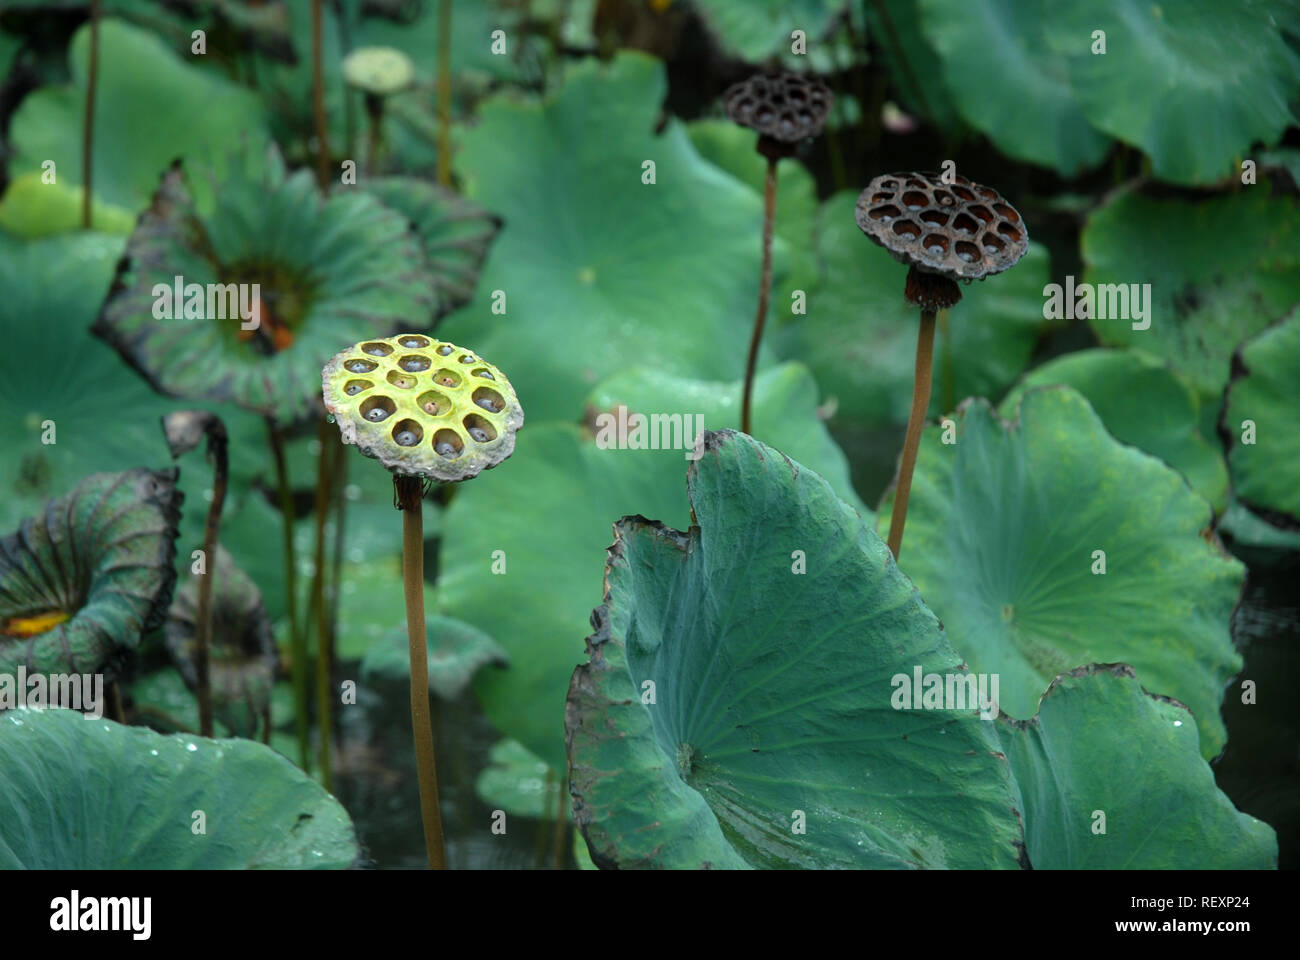 Esqueleto de hojas flor d loto fotografías e imágenes de alta resolución -  Alamy